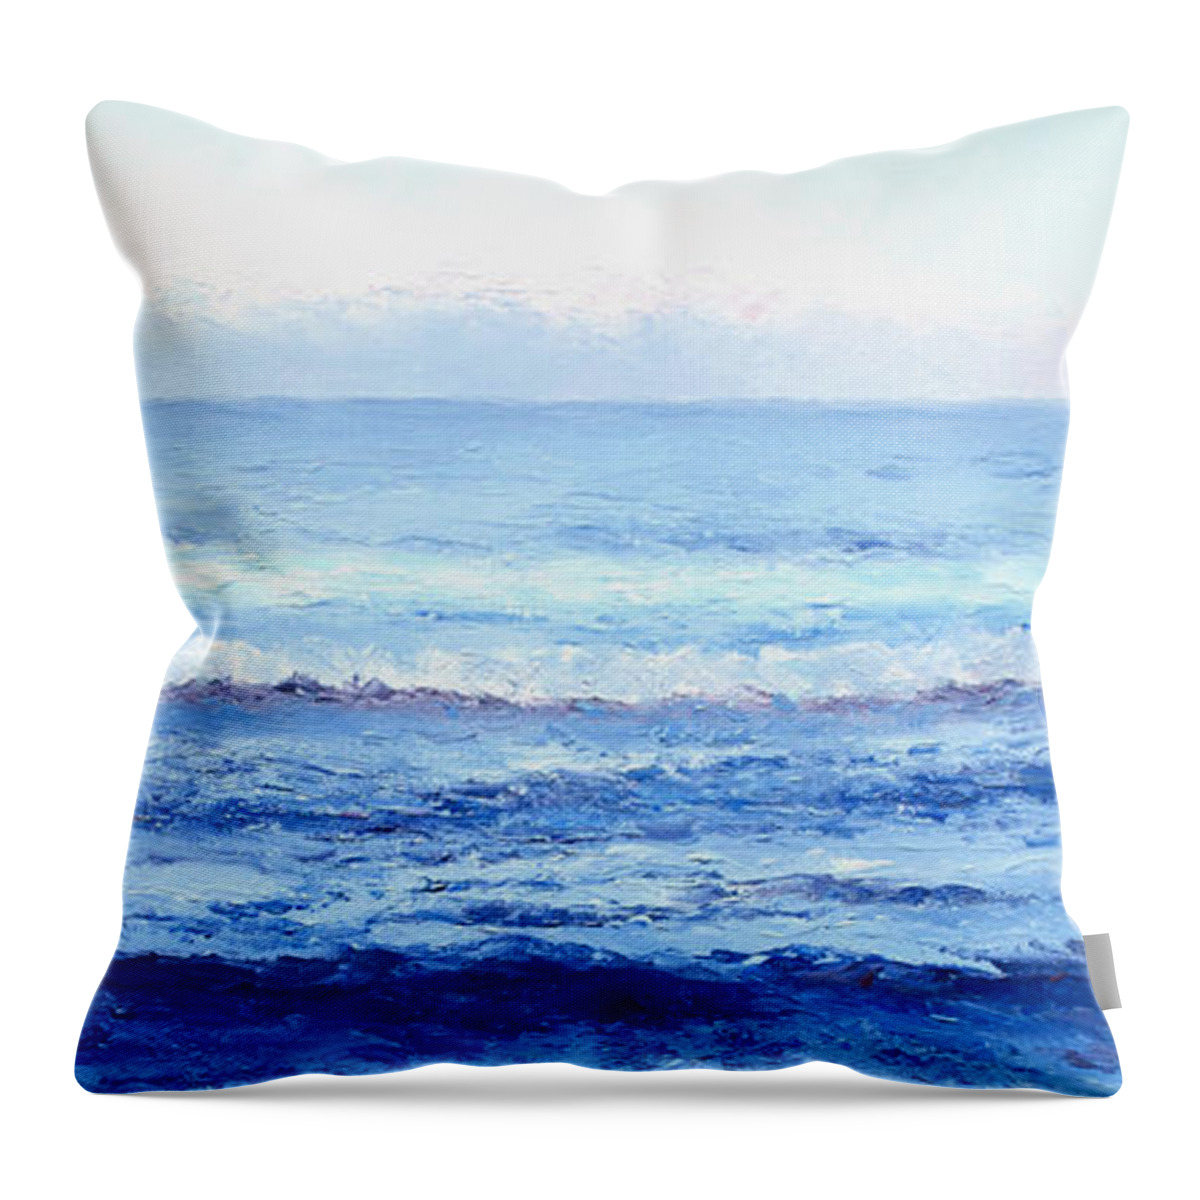 Ocean Throw Pillow featuring the painting Ocean Art - Cobalt Blue Ocean by Jan Matson